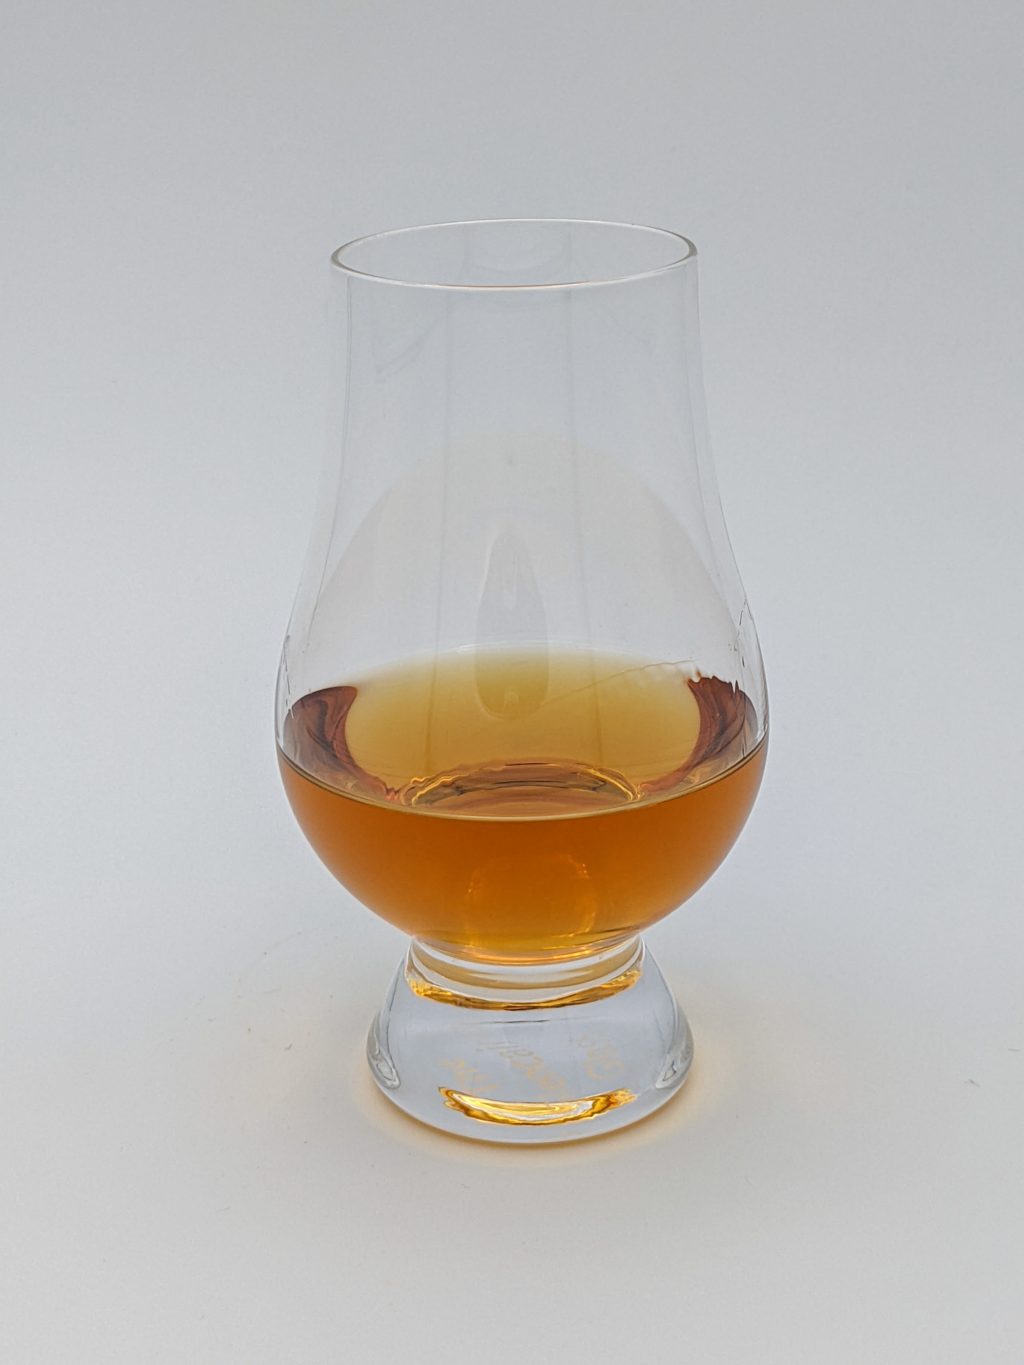 light brown liquid in a glencairn glass